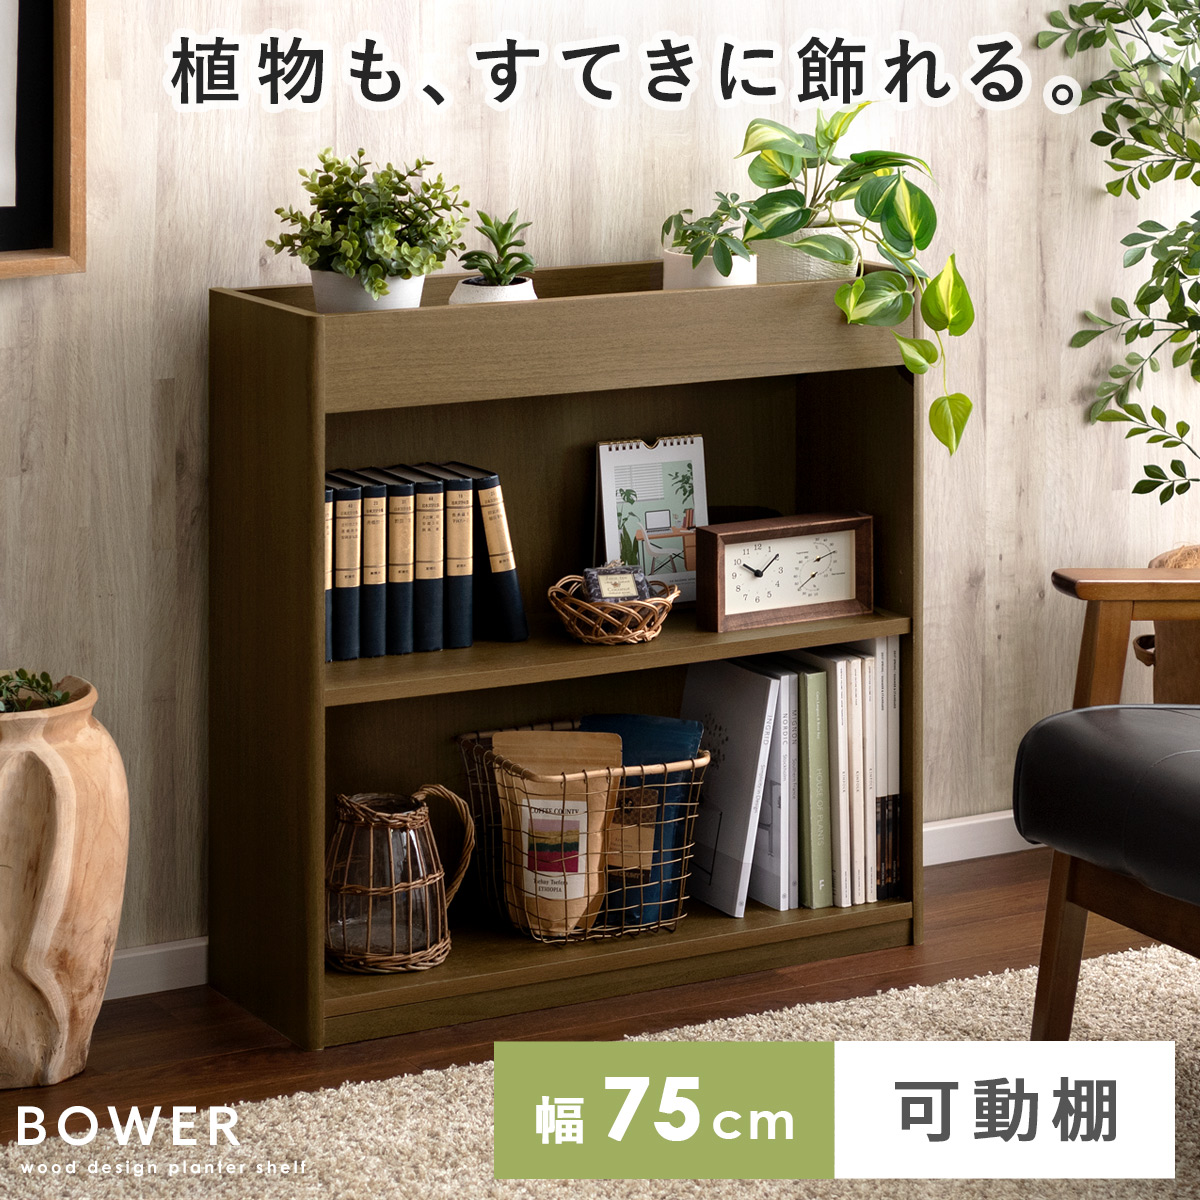 プランターシェルフ BOWER(バウアー) 【公式】 エア・リゾーム インテリア・家具通販